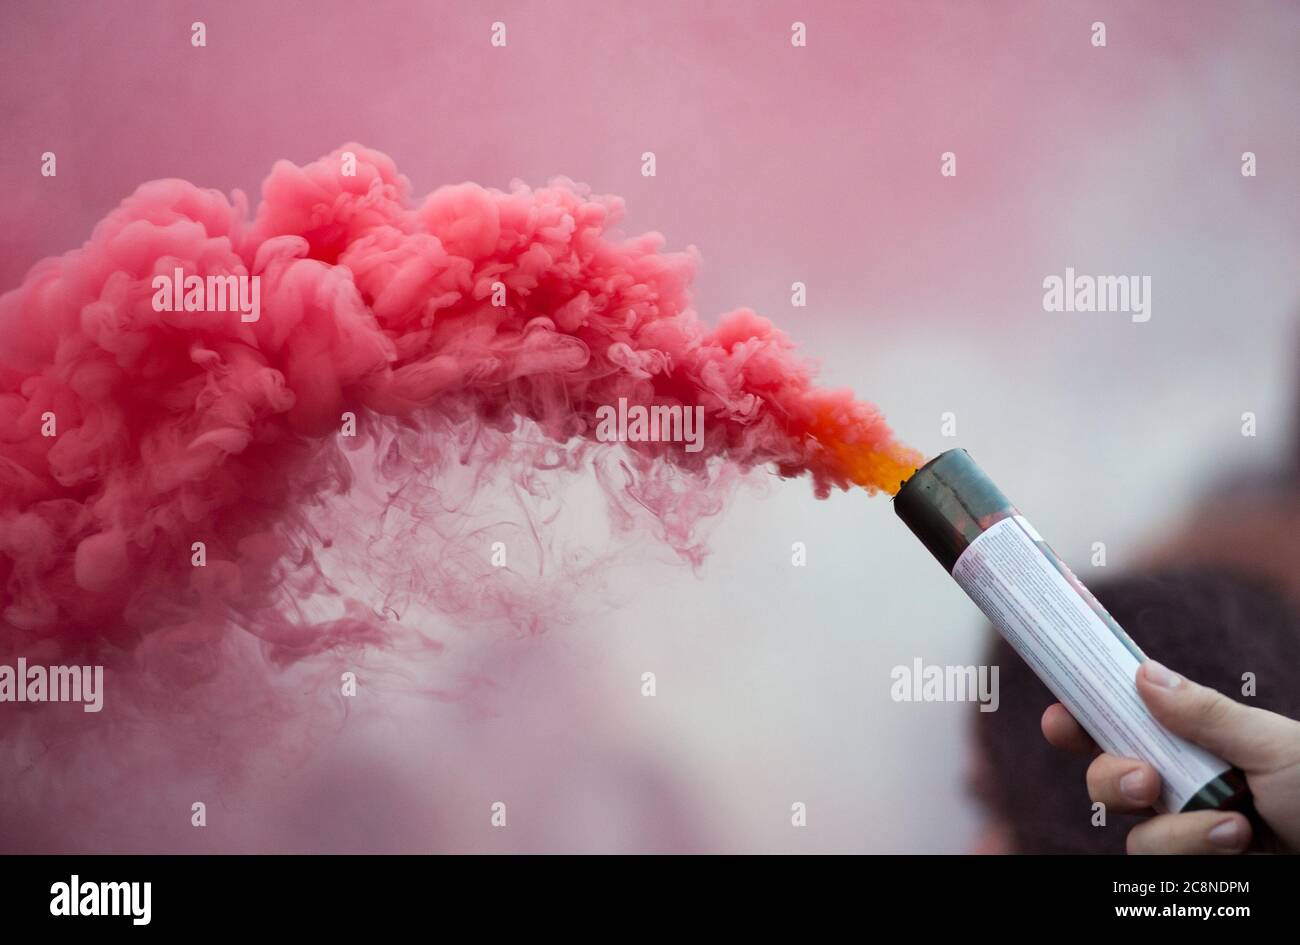 bombe de fumée de couleur rose dans la main humaine Banque D'Images